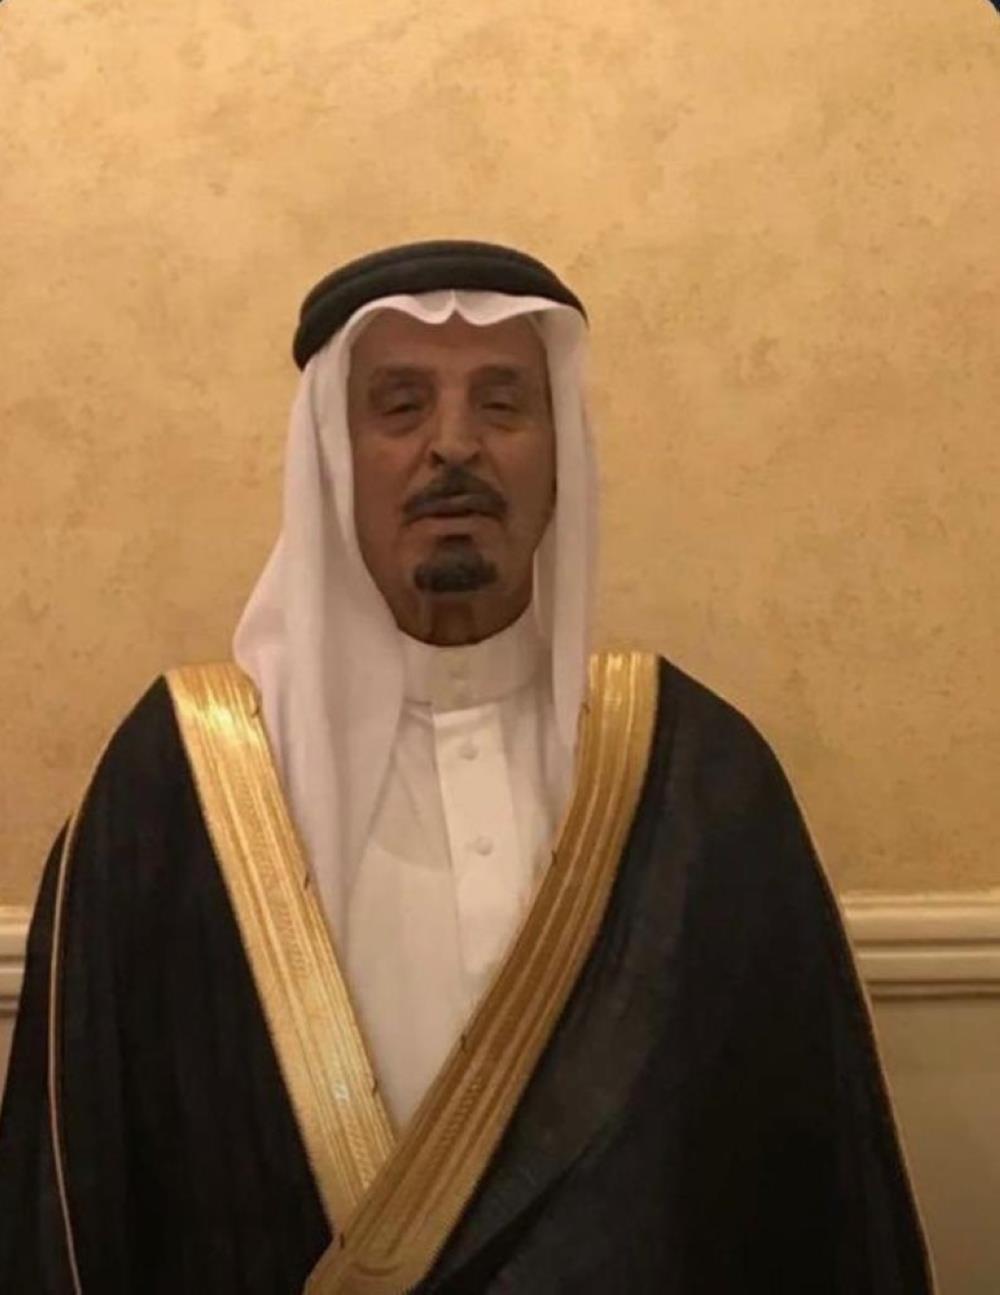 سليمان بن حبتر في ذمة الله - جريدة الوطن السعودية